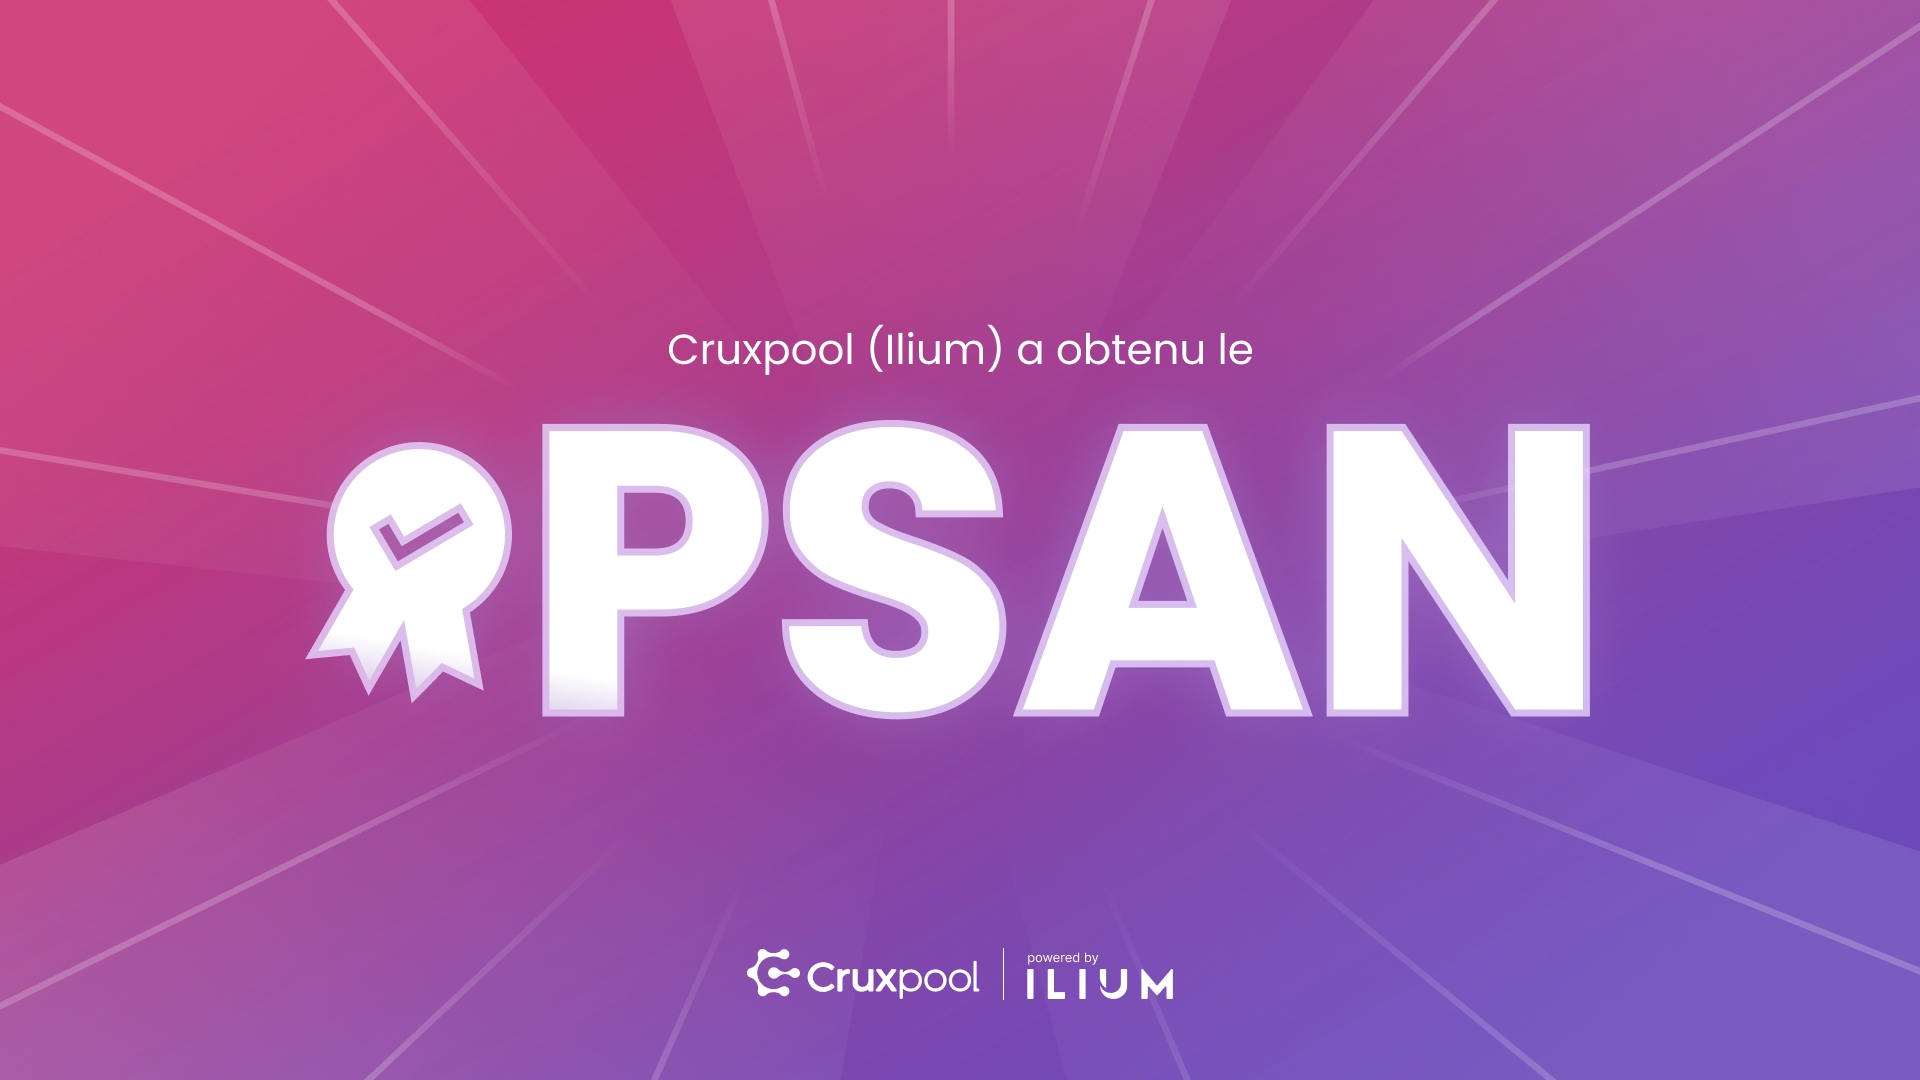 Ilium (Cruxpool) is registered as PSAN